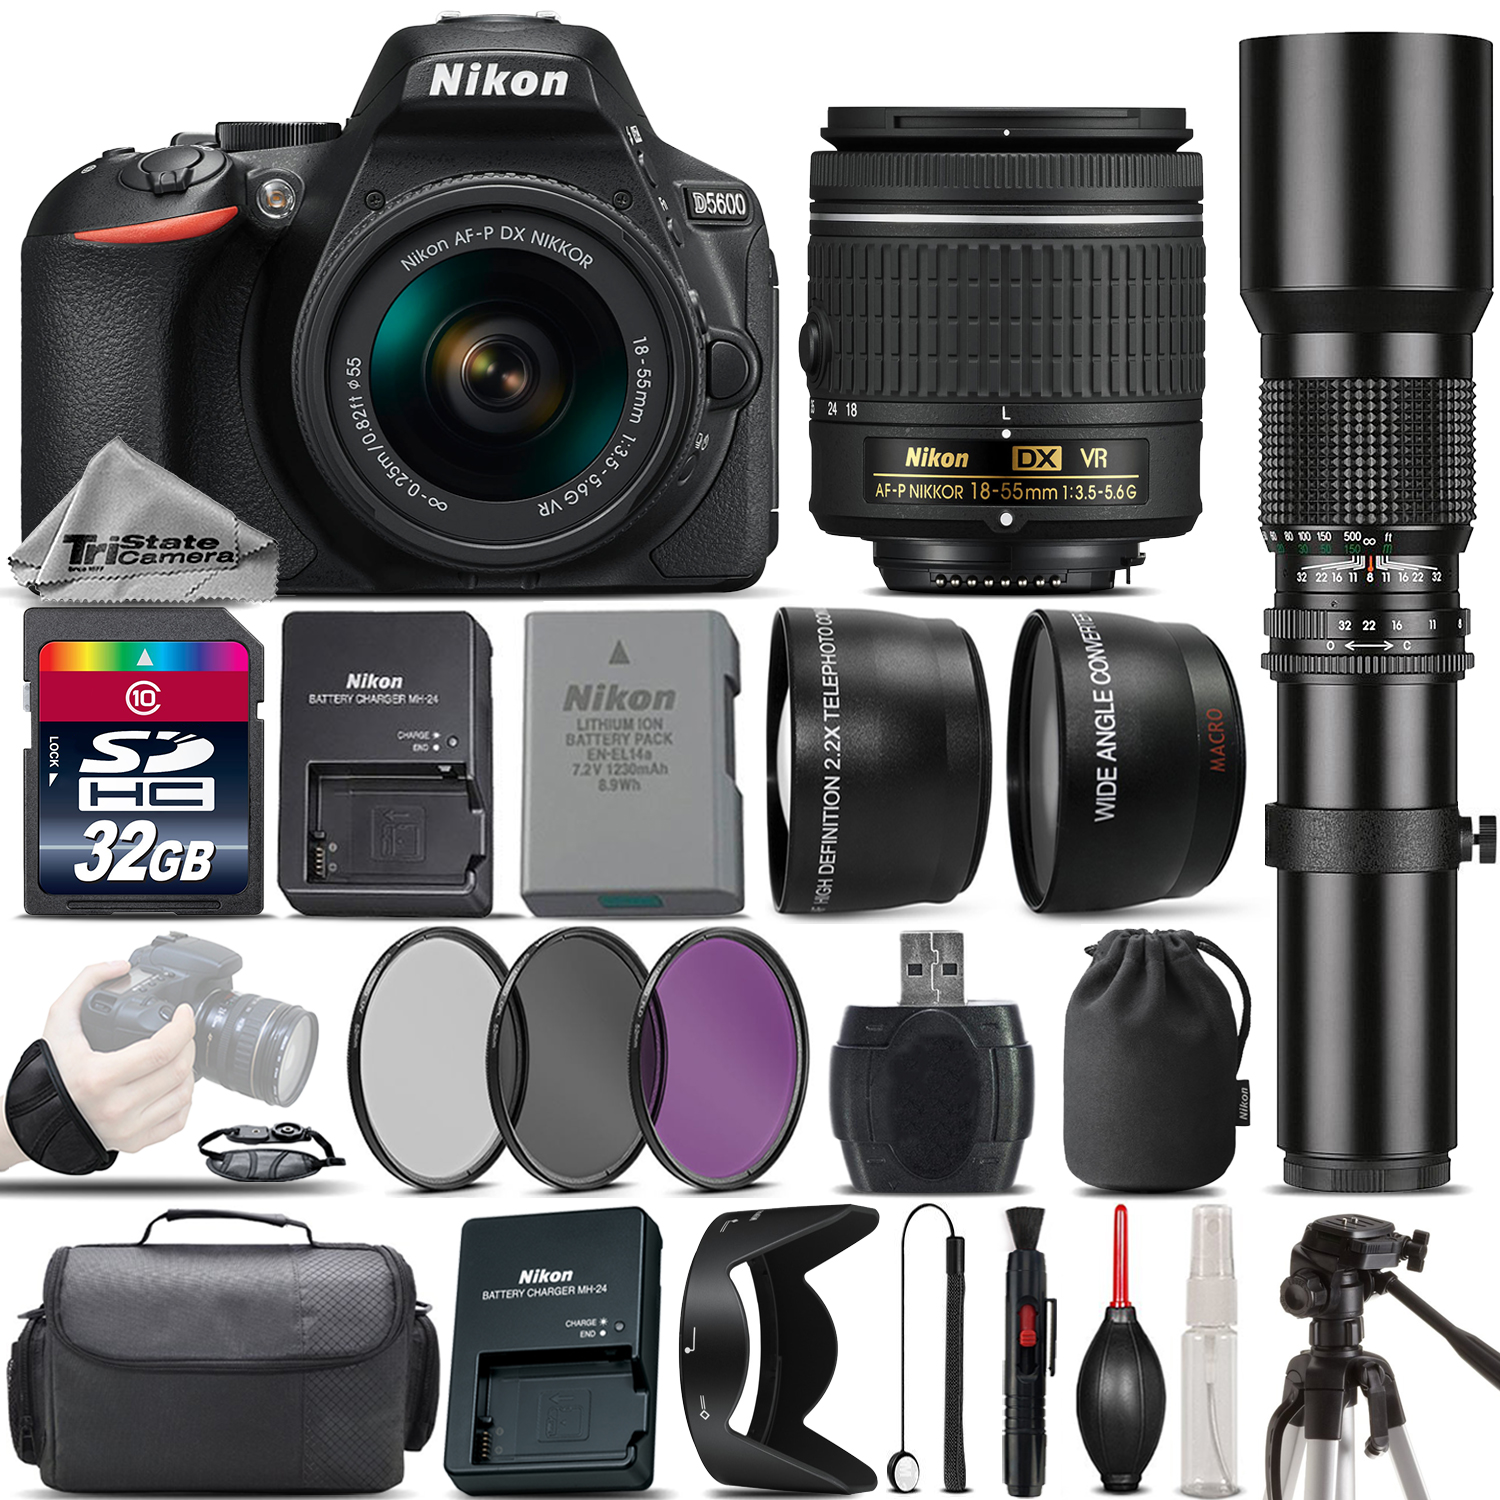 D5600 DSLR Camera + Nikon 18-55mm VR Lens + 500mm Telephoto Lens -32GB Kit *FREE SHIPPING*